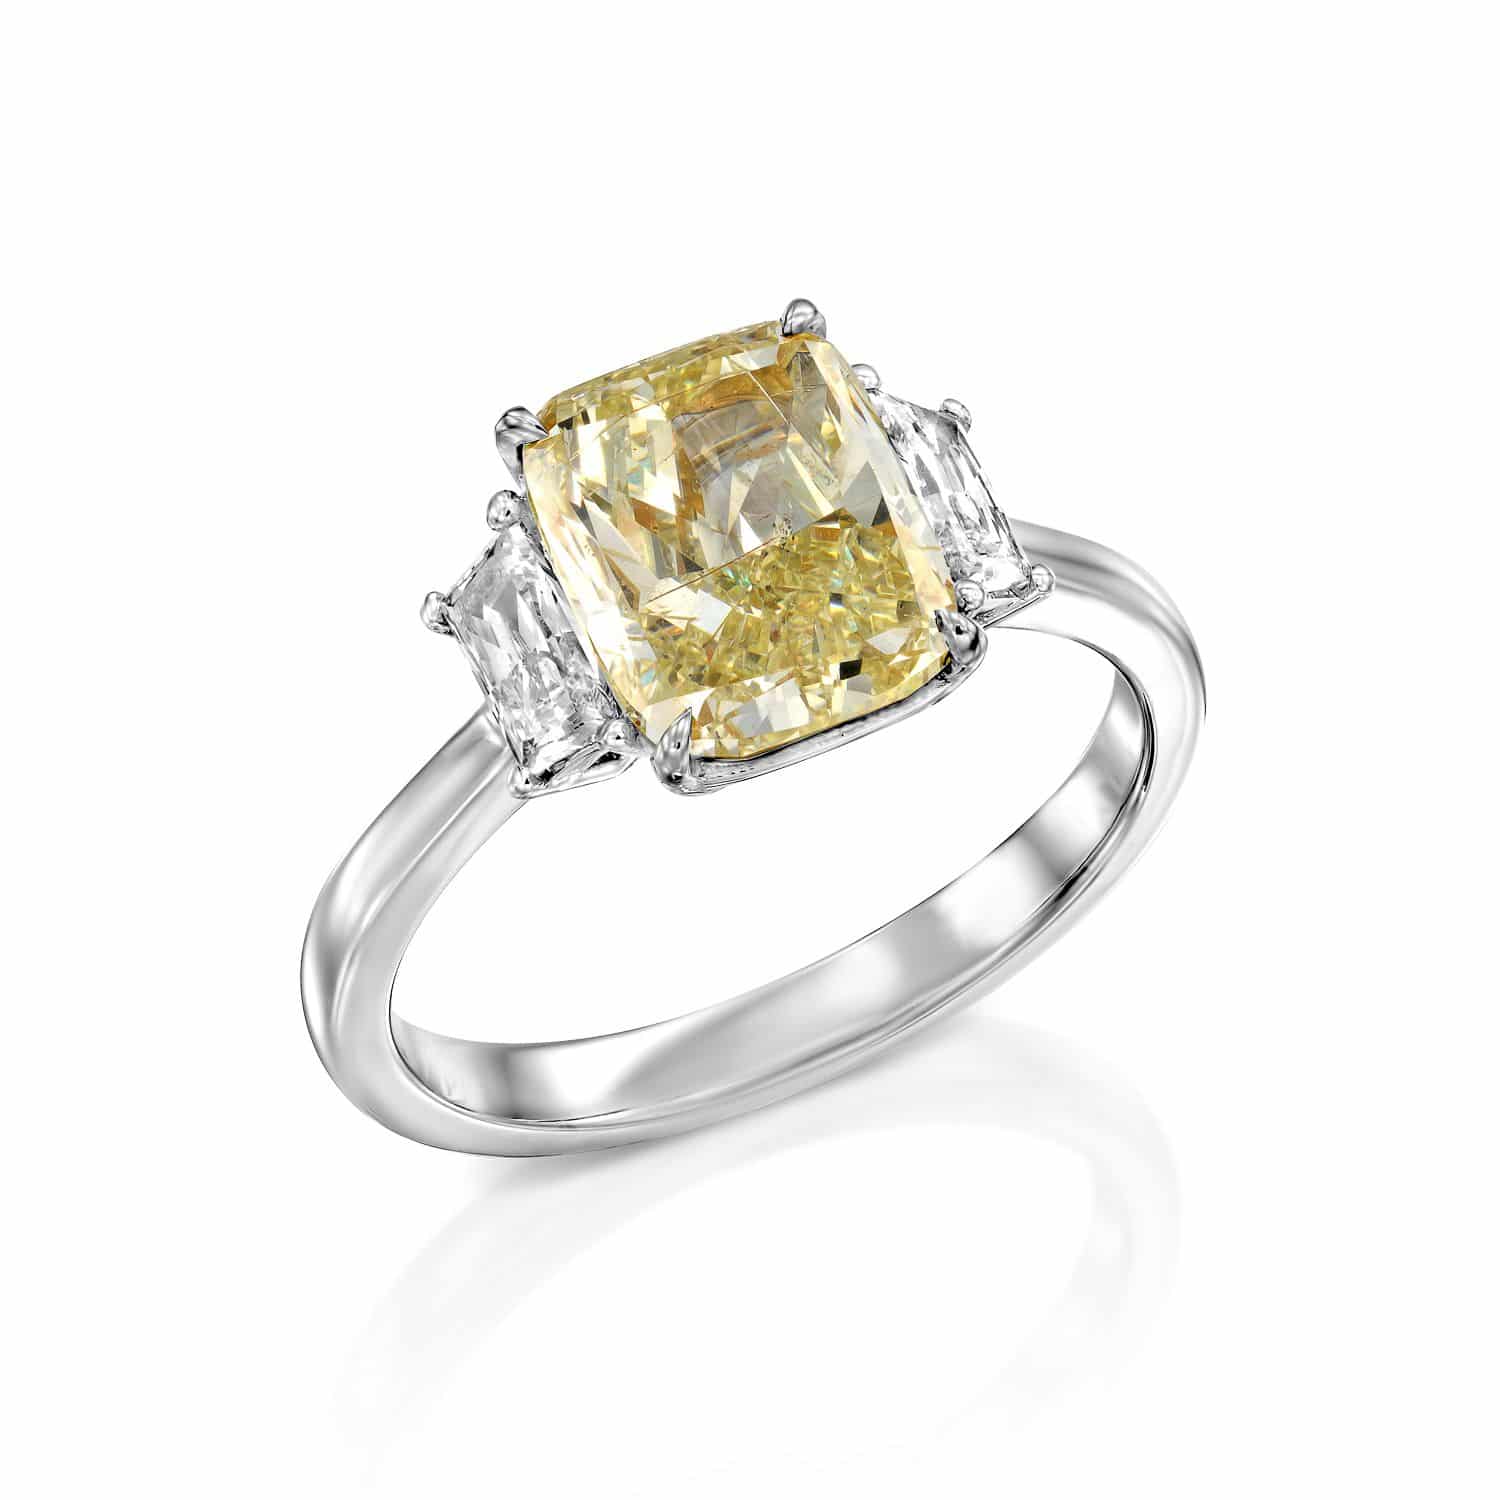 טבעת כסף אלגנטית הכוללת יהלום צהוב בחיתוך קורן ולצידו שני יהלומים לבנים טרפז על רצועה מלוטשת.